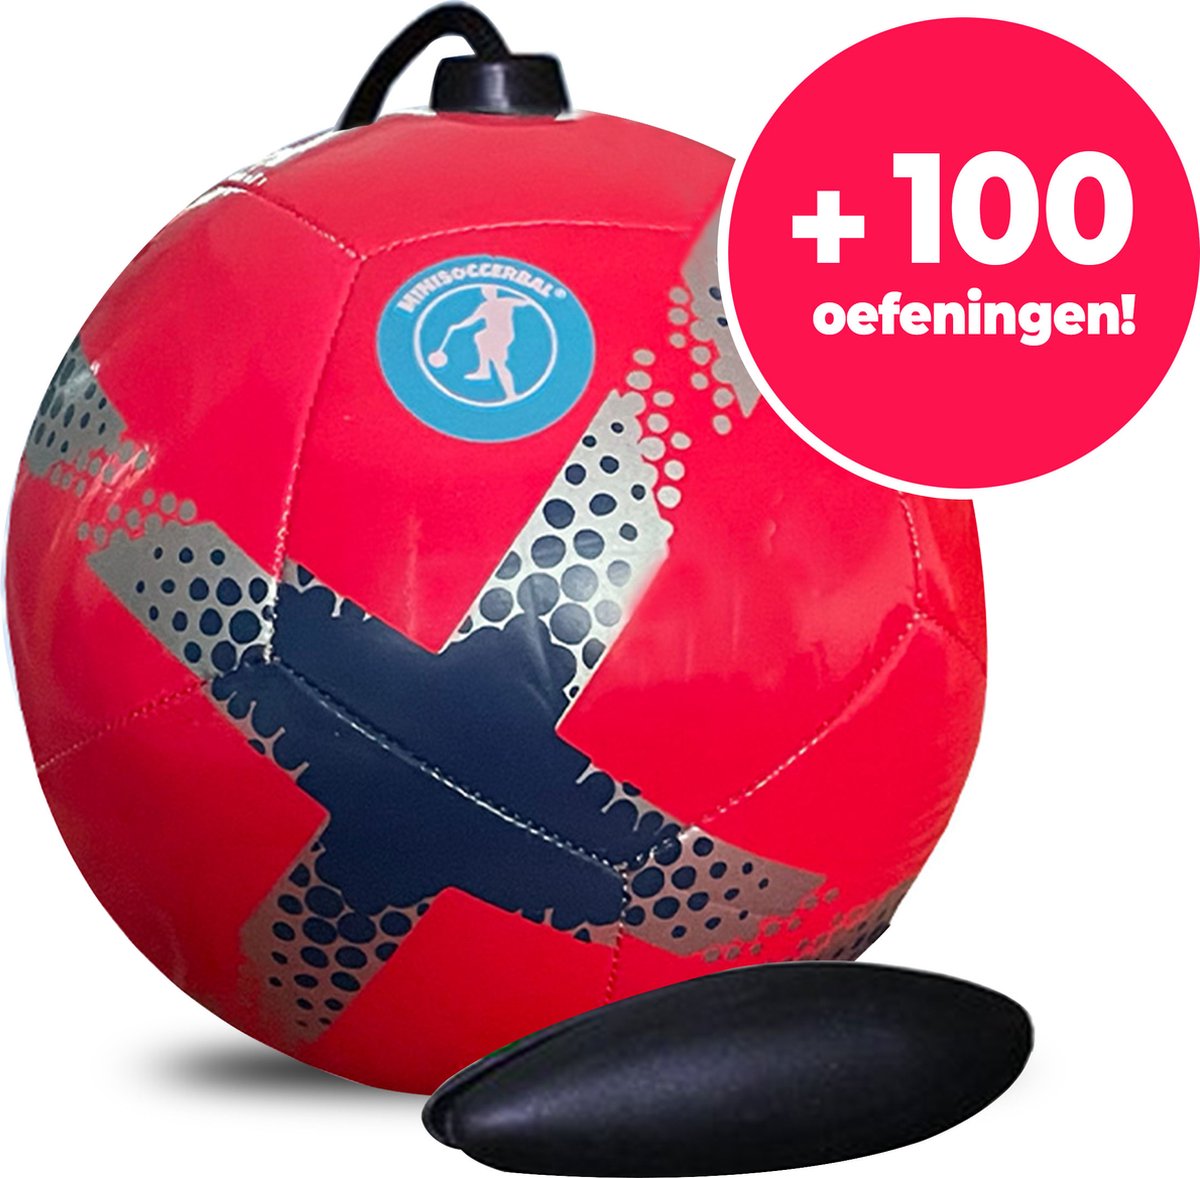 Minisoccerbal Voetbal - Ballon sur ficelle - Senseball - Or